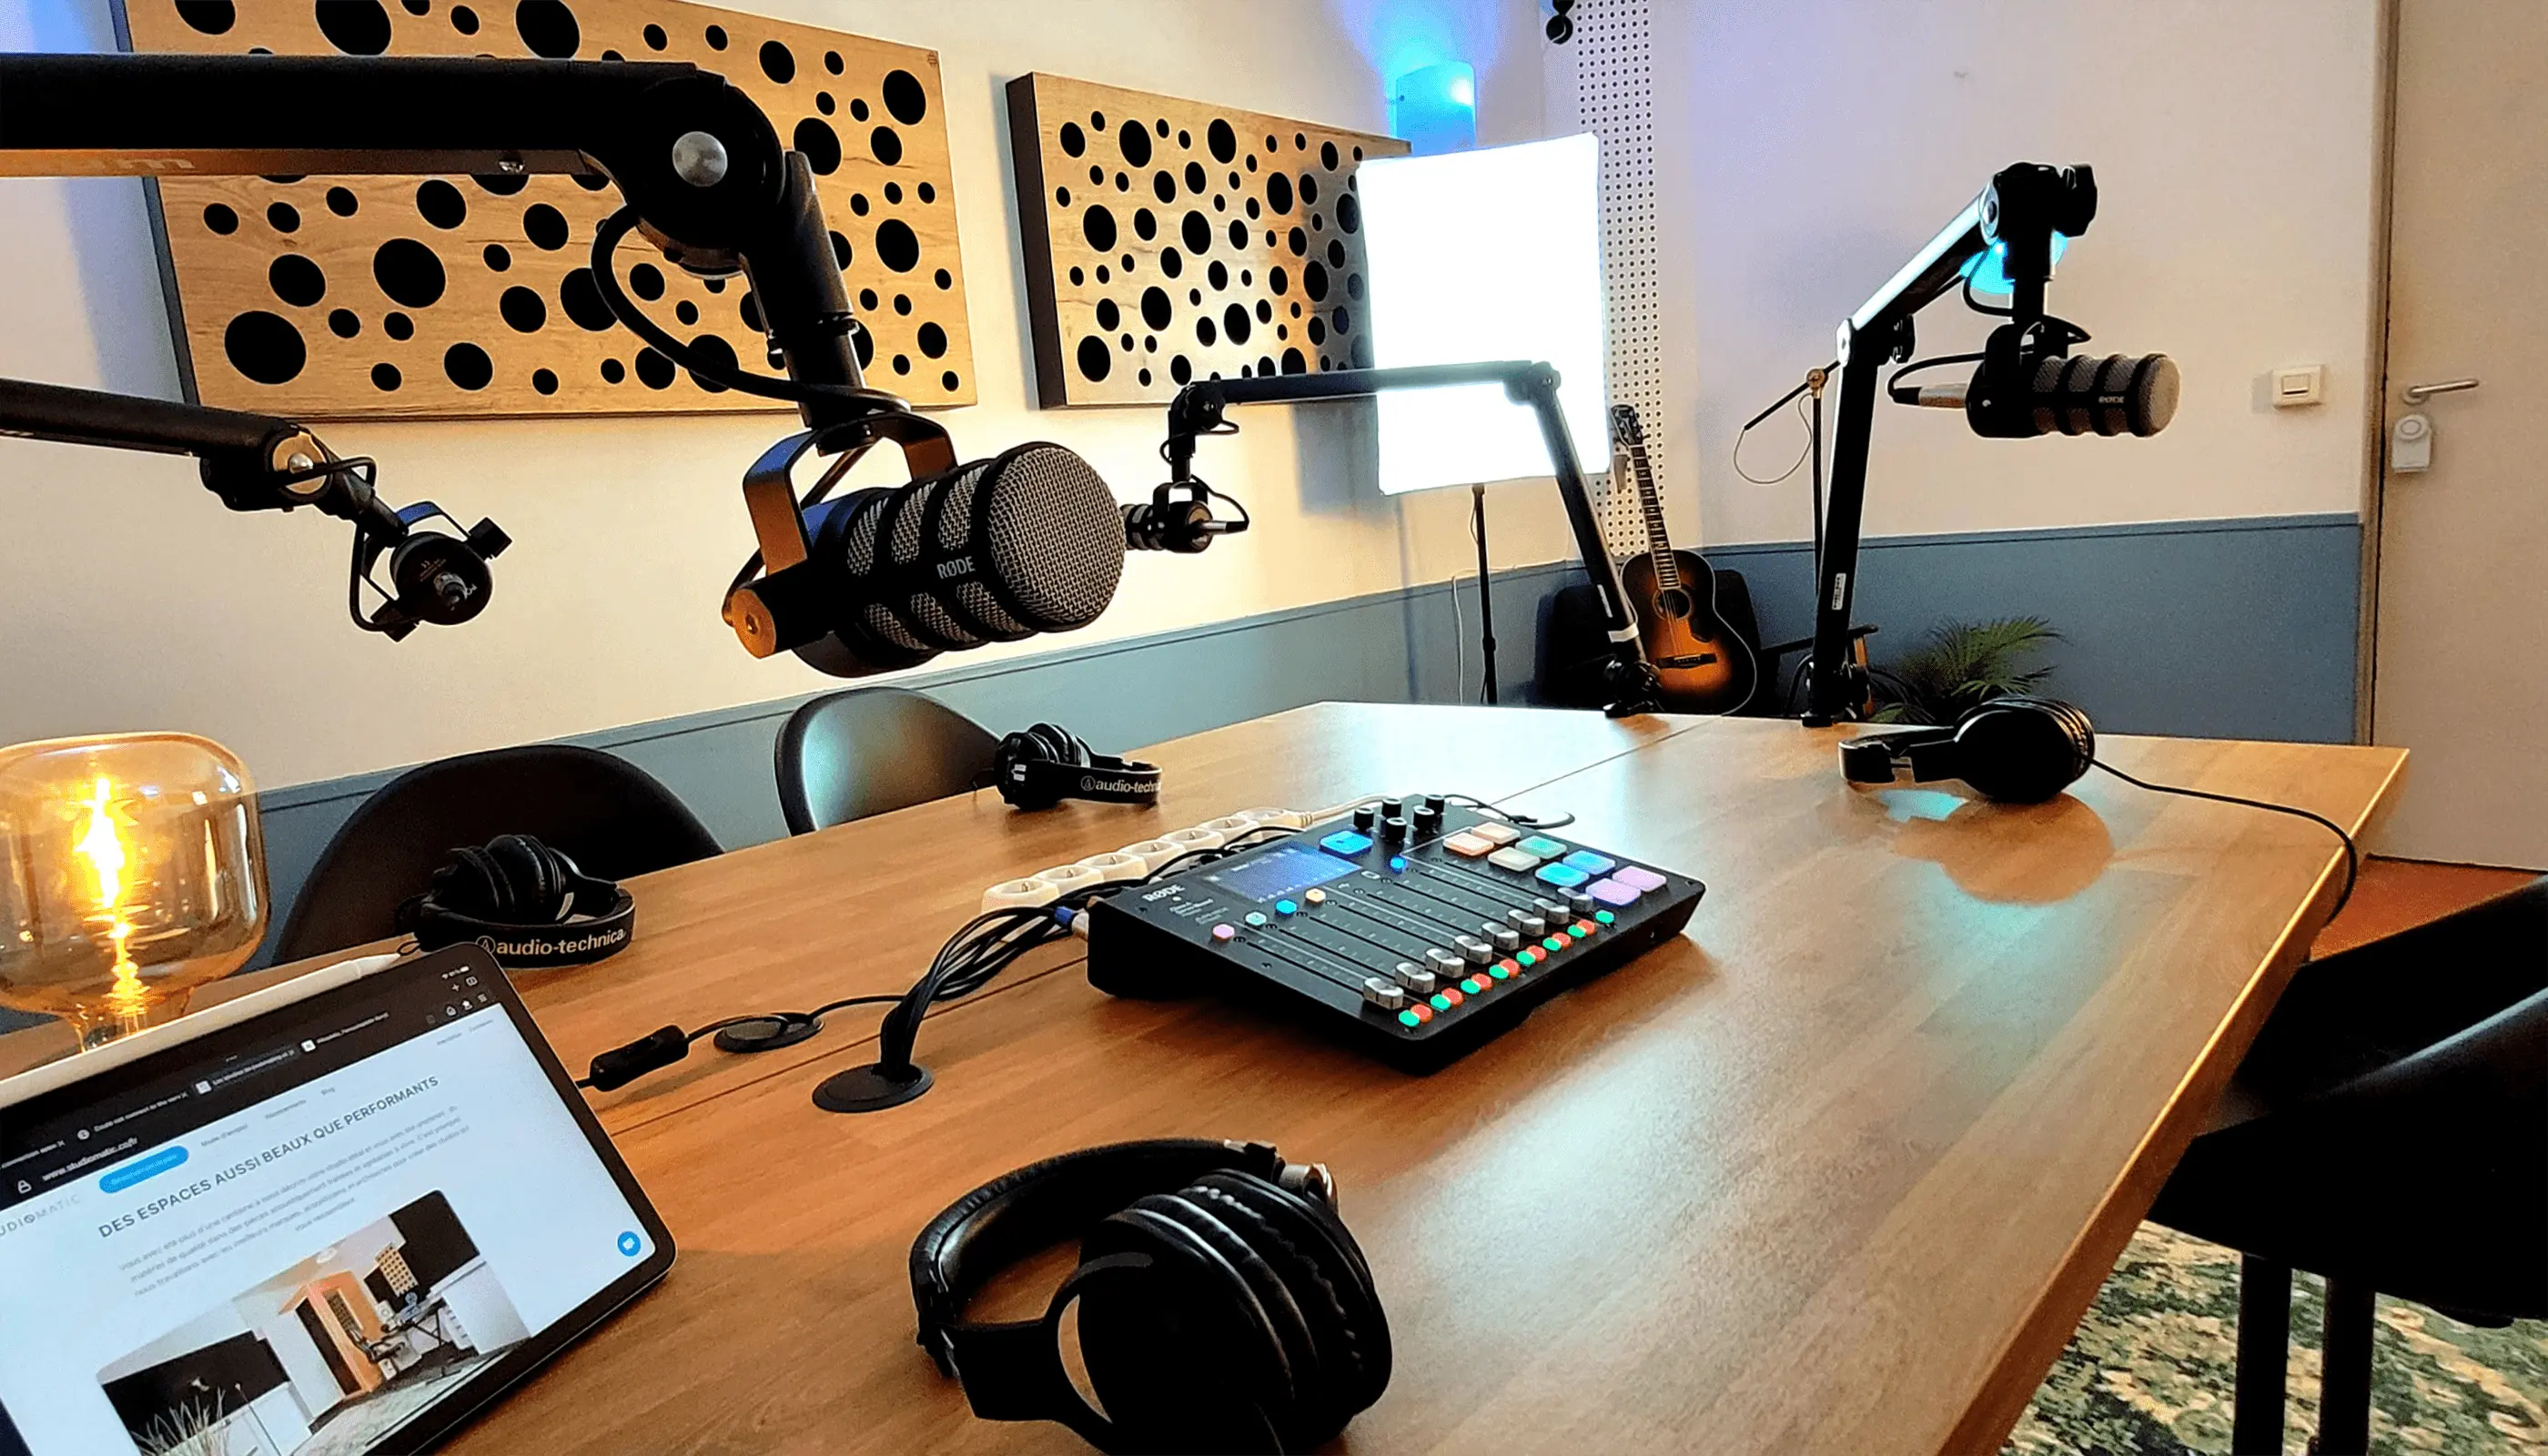 Podcast studio